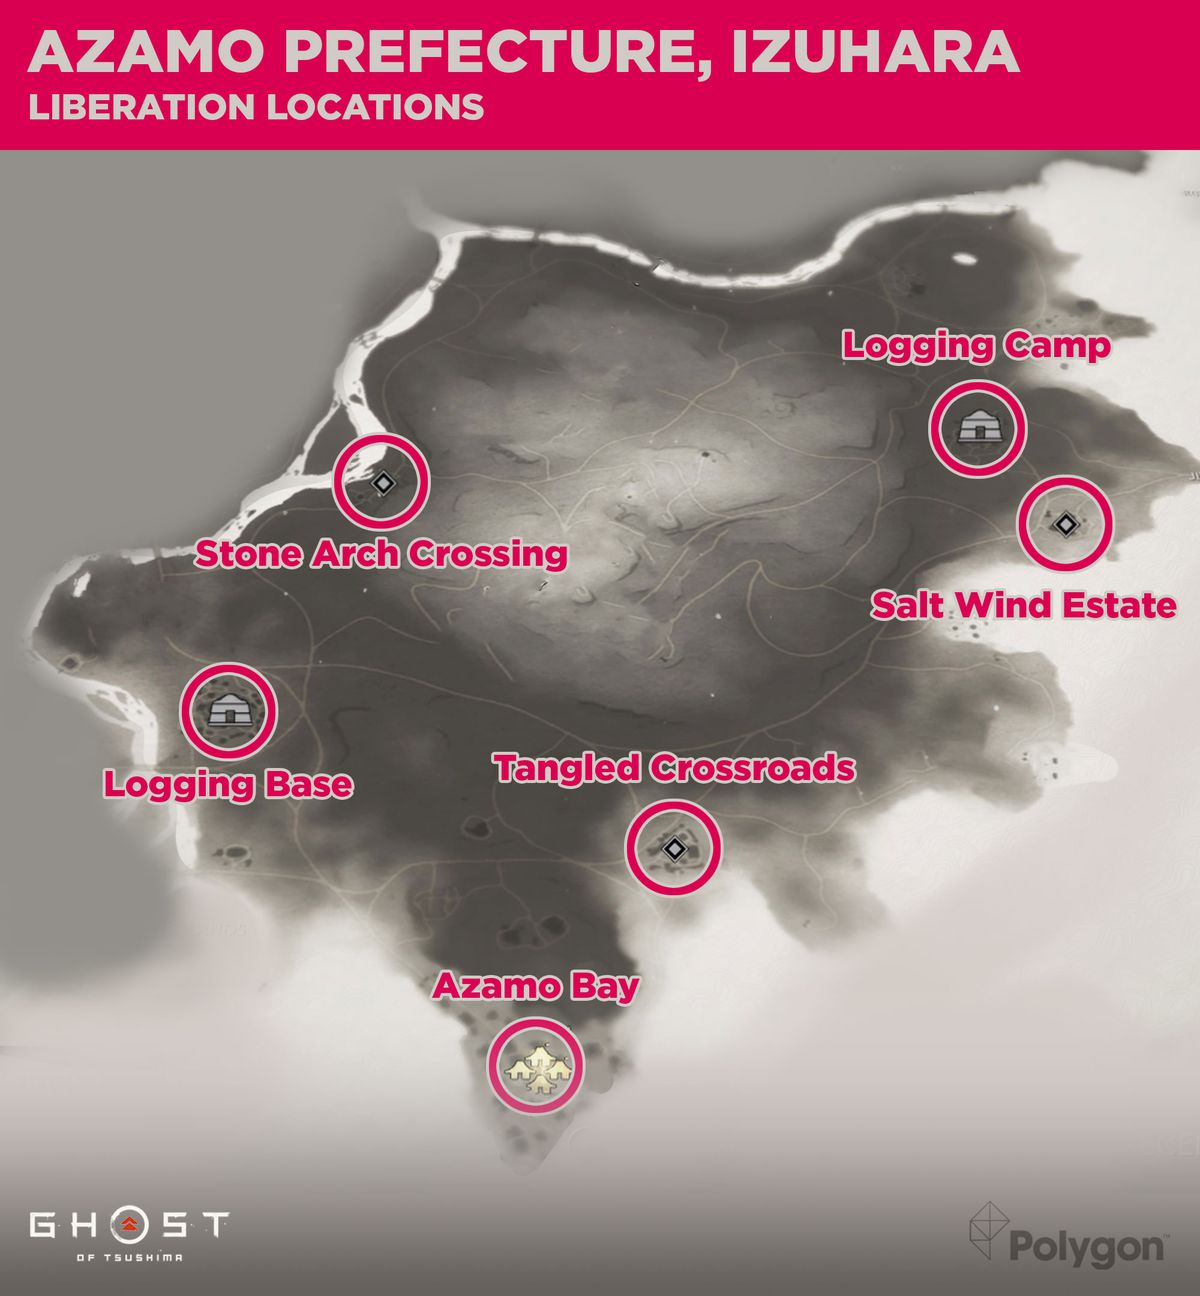 Azamo-prefekturen i Ghost of Tsushima och de områden som behöver befrias inklusive: Azamo By, skogsbasen, stenbågskorsningen, trassligt vägskäl, Salt Wind Estate och logglägret.